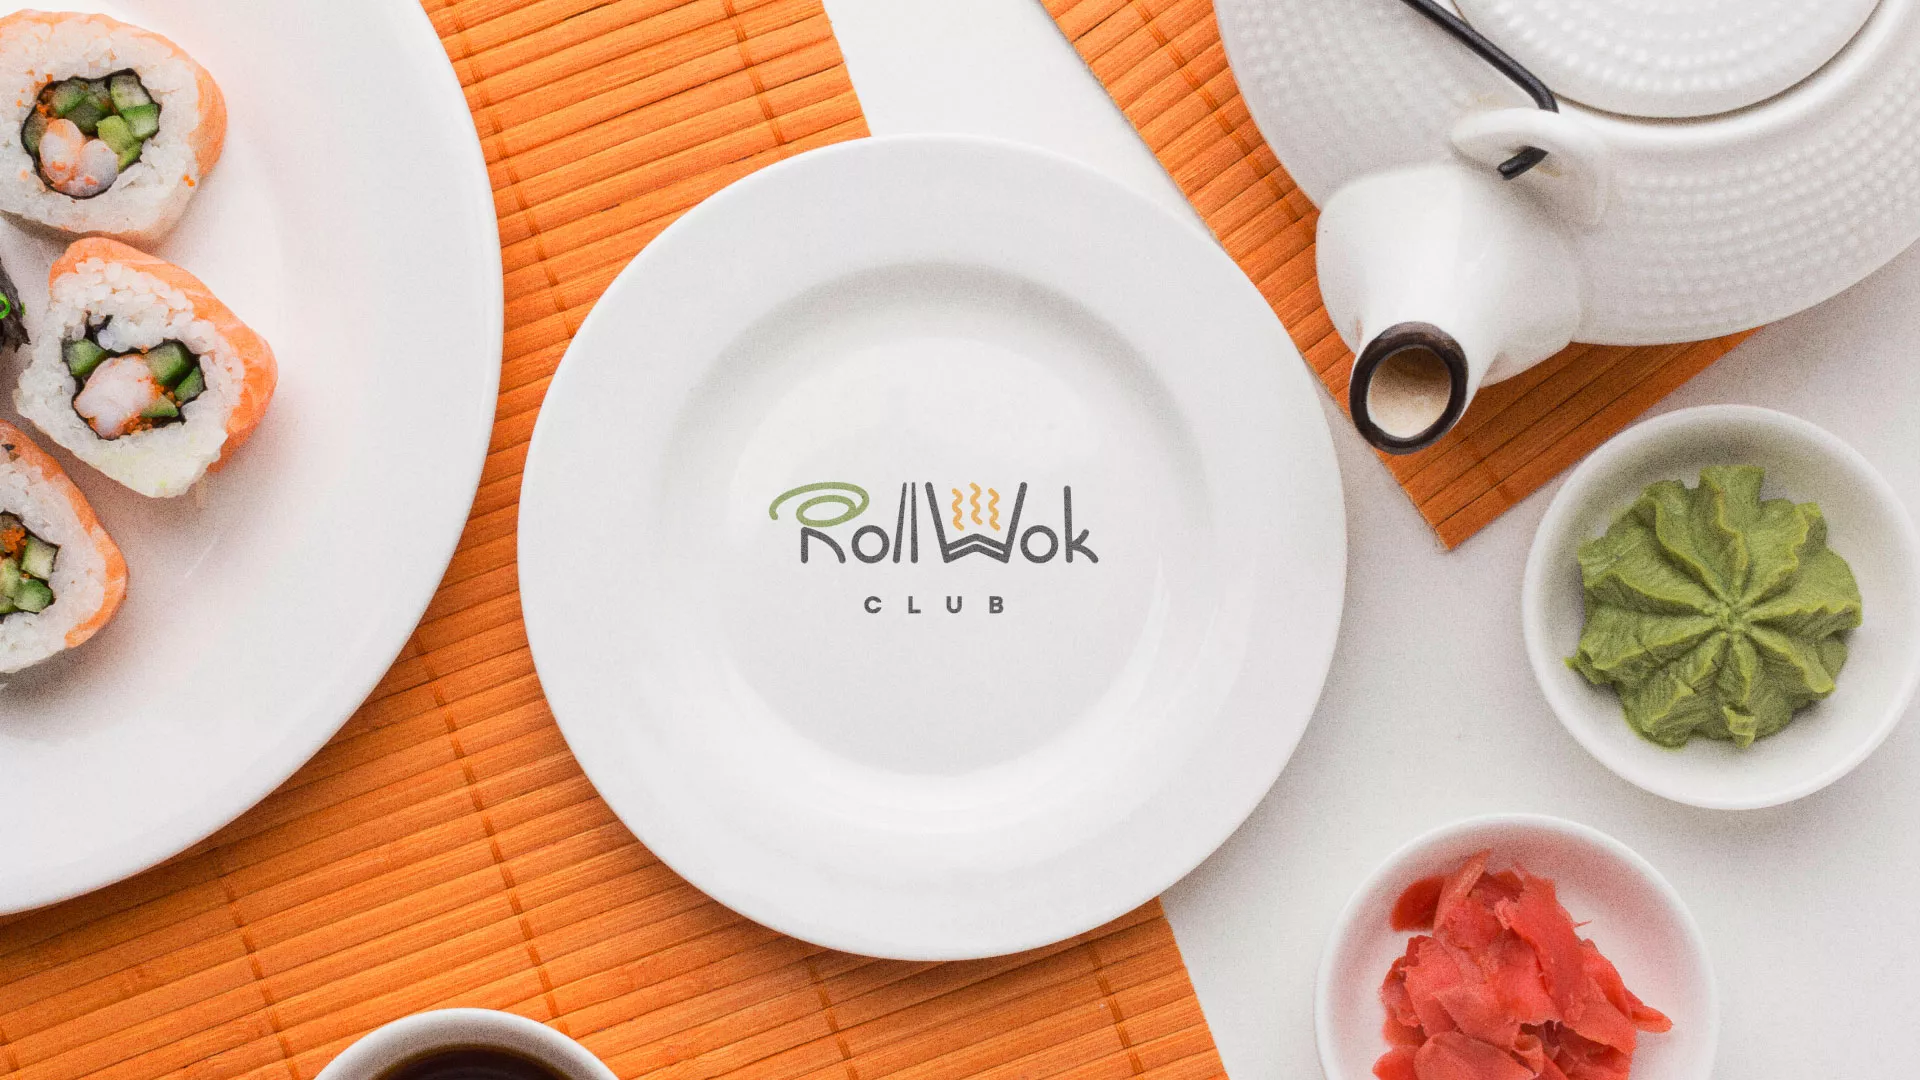 Разработка логотипа и фирменного стиля суши-бара «Roll Wok Club» в Первомайске